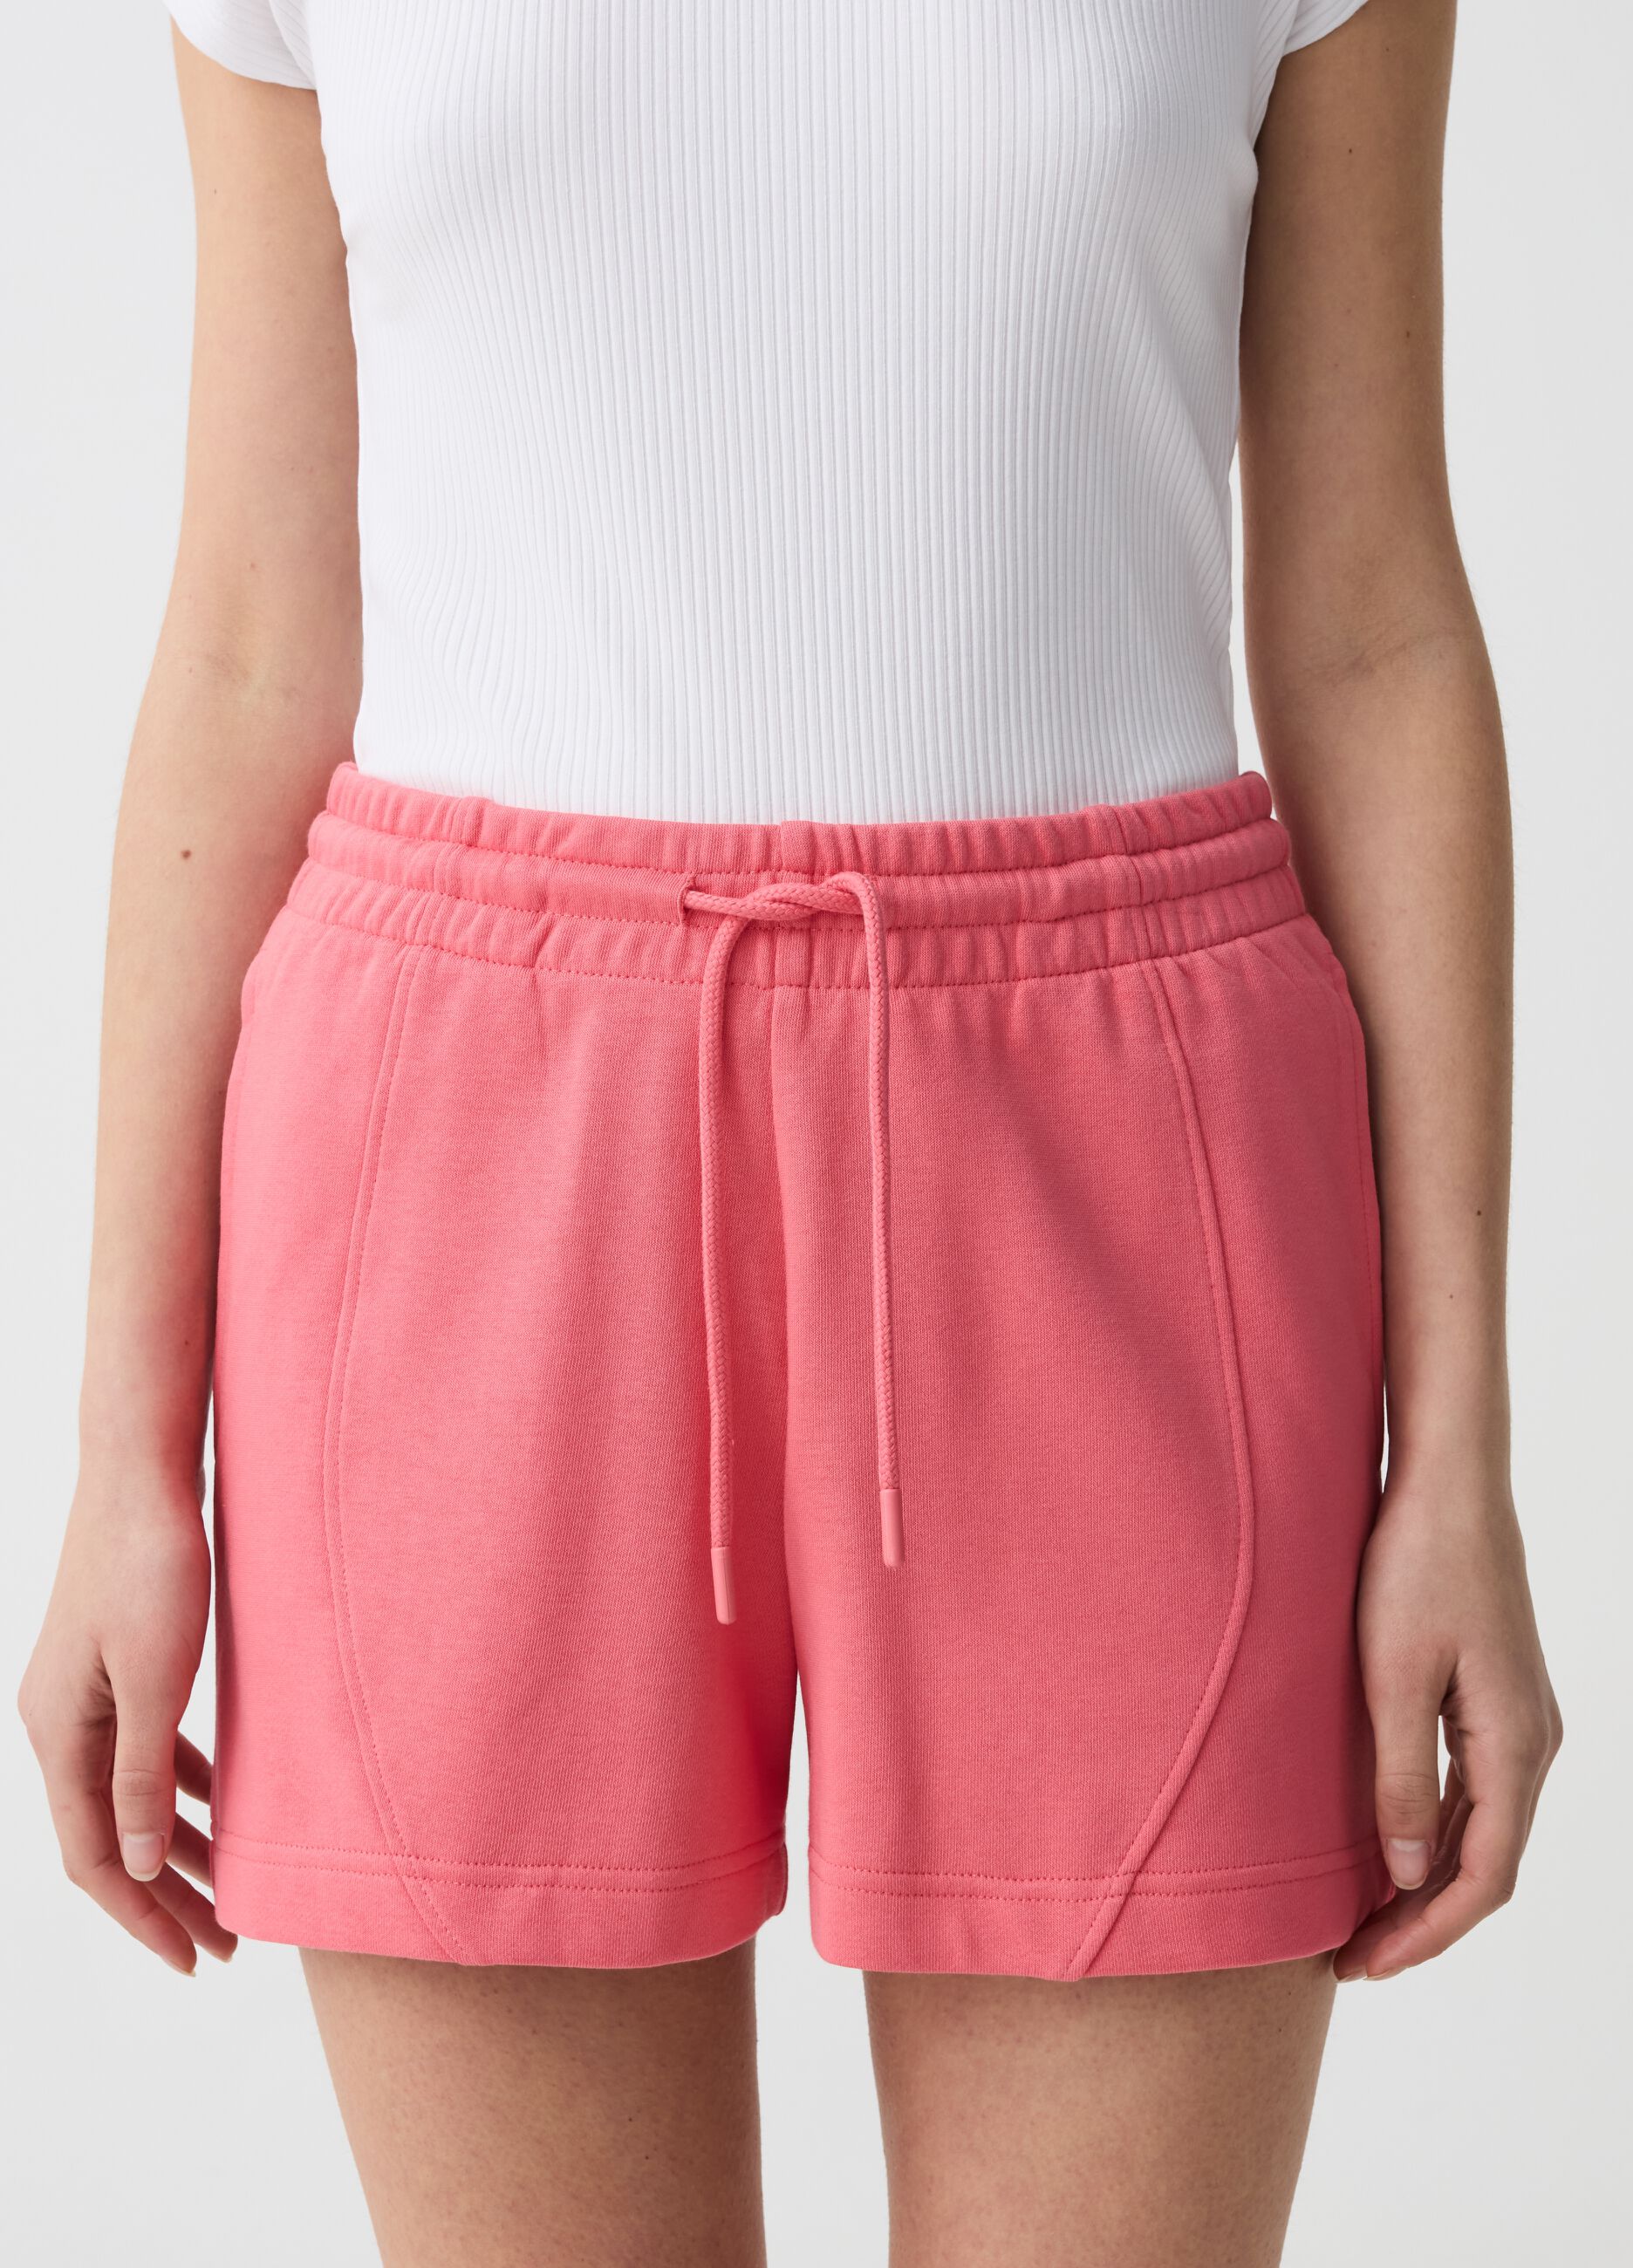 Shorts Essential con costuras en relieve